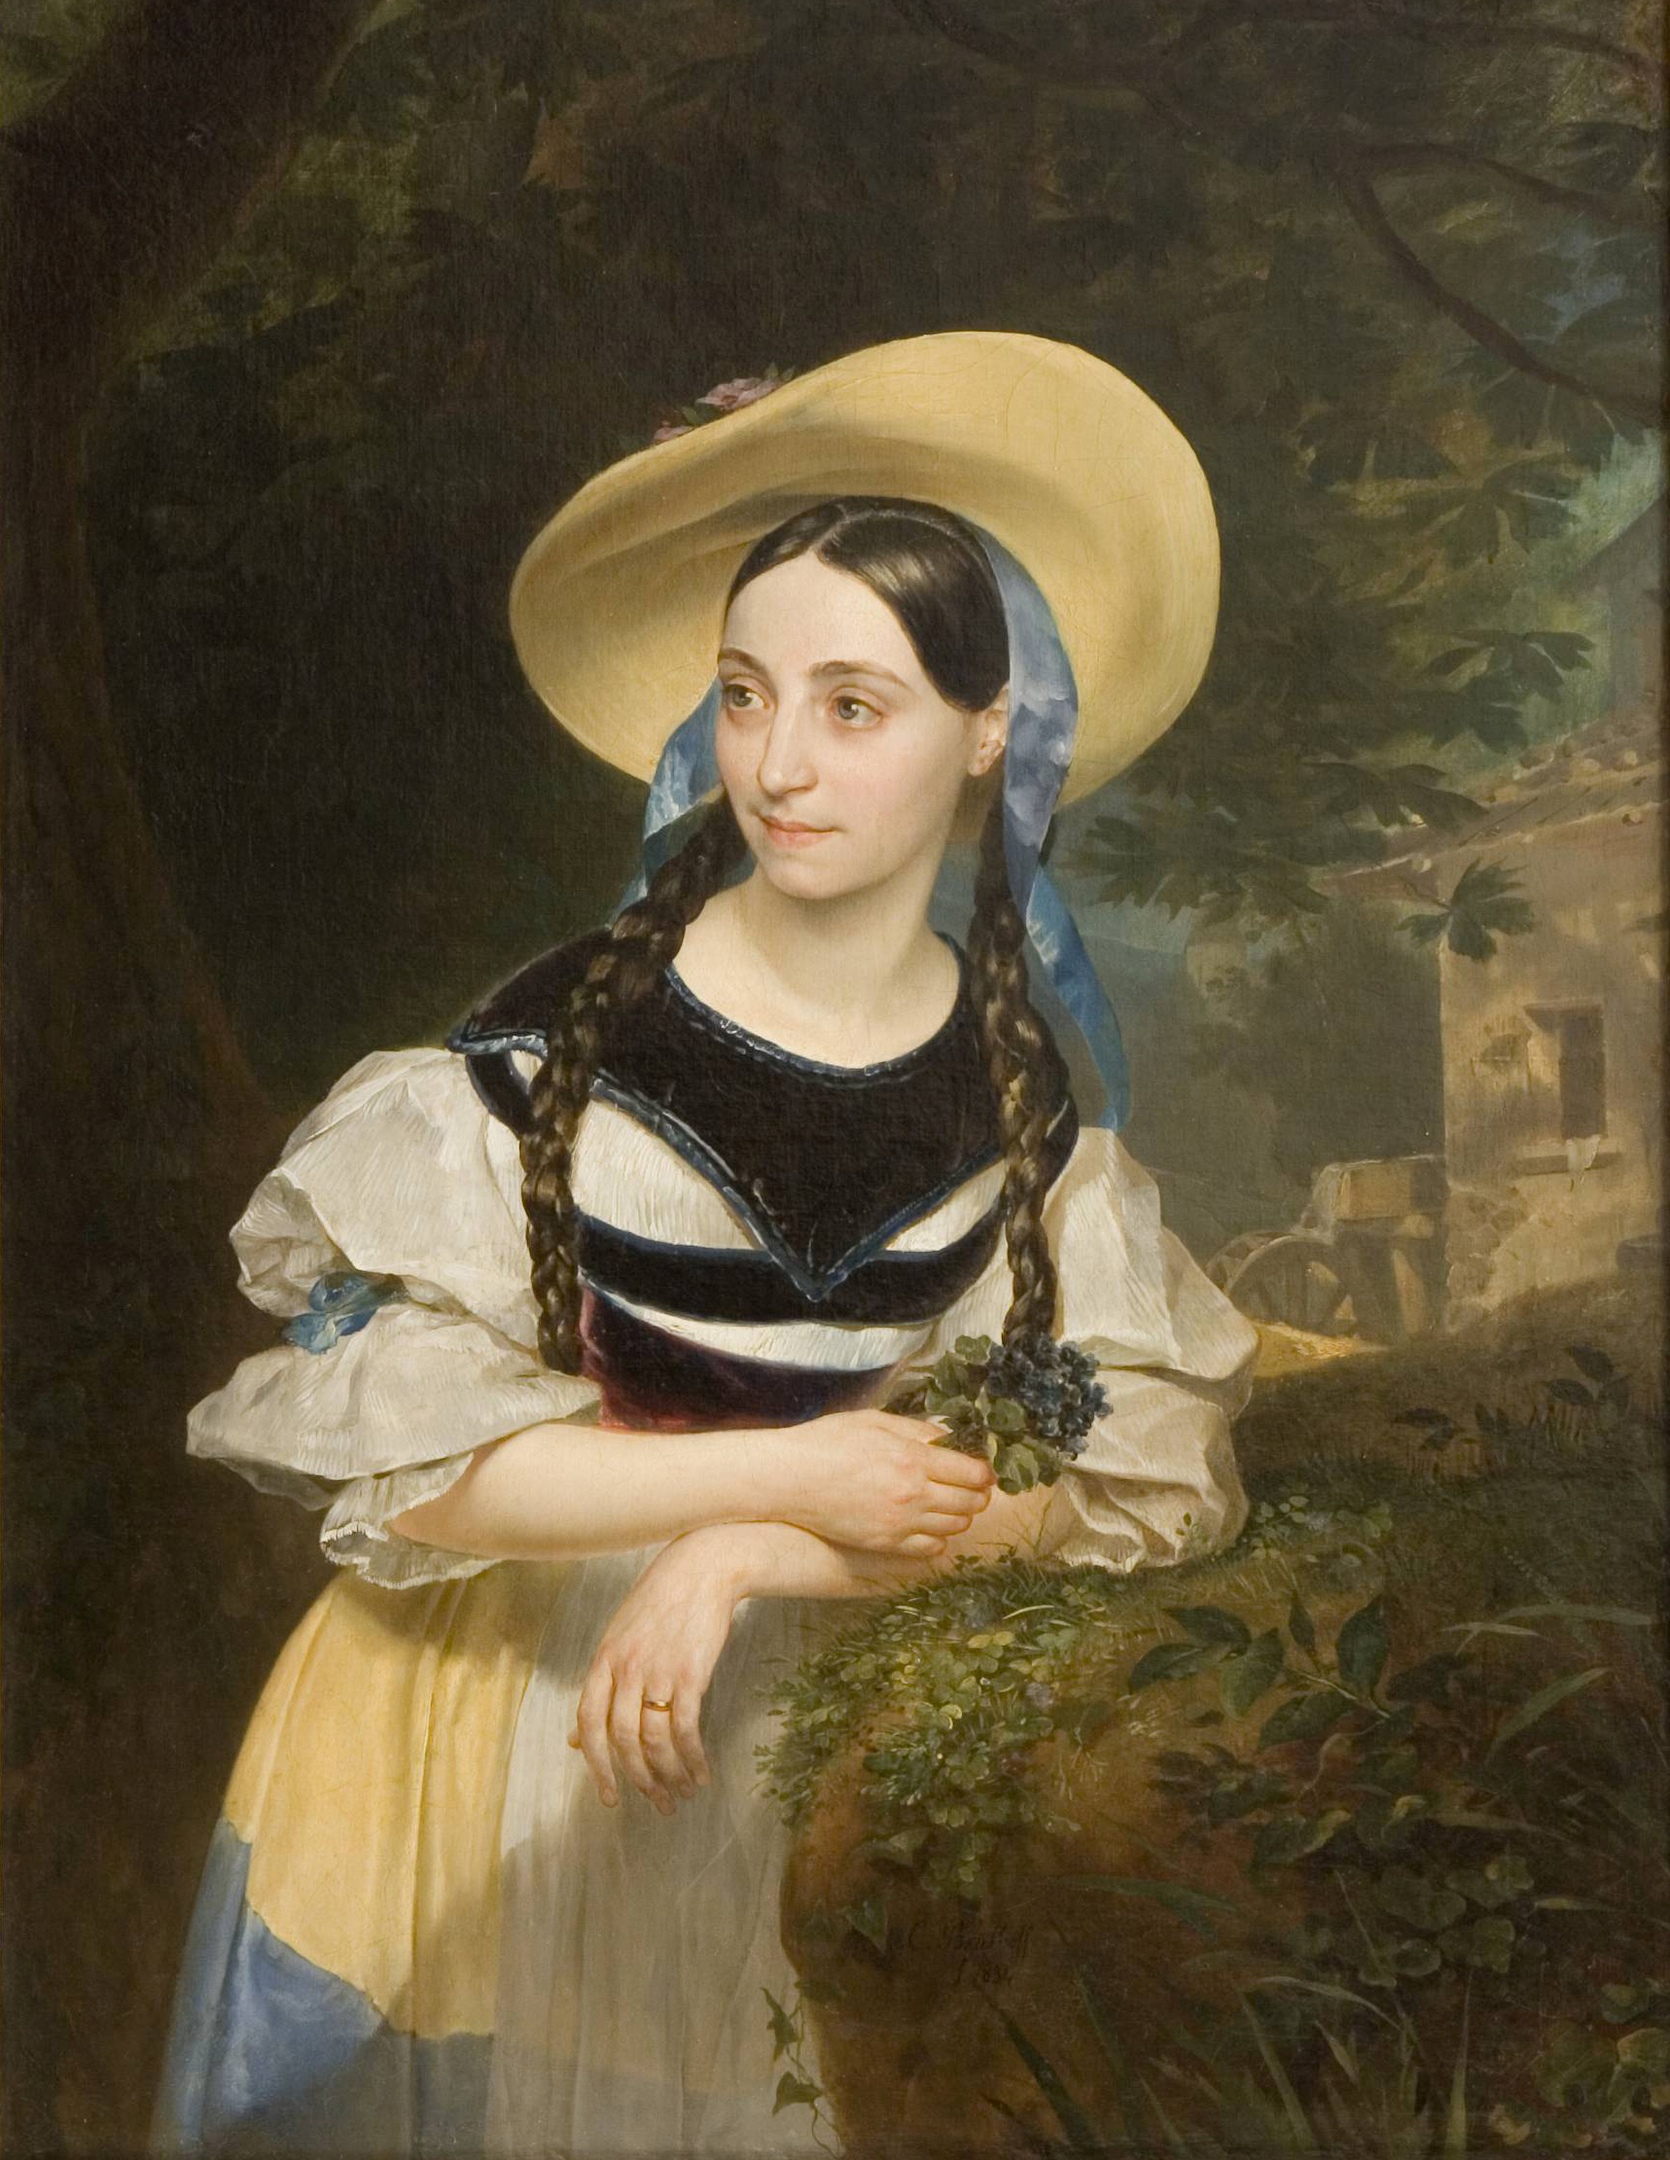 Portret Fanny Persiani-Tacchinardi jako Aminy by Karl Bryullov - 1834 